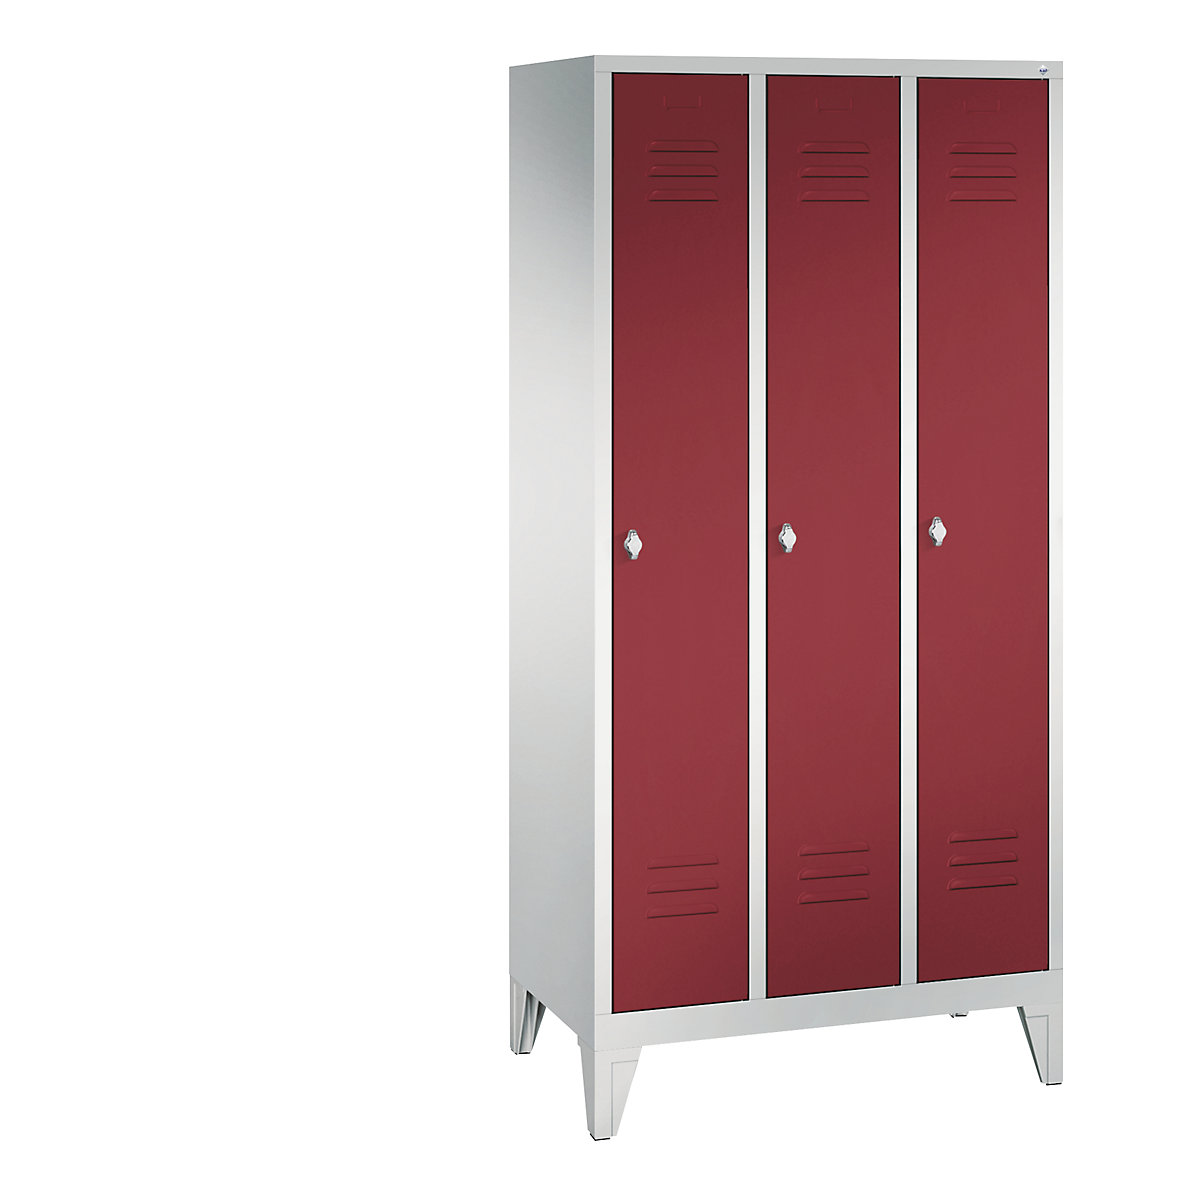 CLASSIC garderobna omara z nogami – C+P, 3 predelki, širina 300 mm/predelek, svetlo sive / rubinasto rdeče barve-13